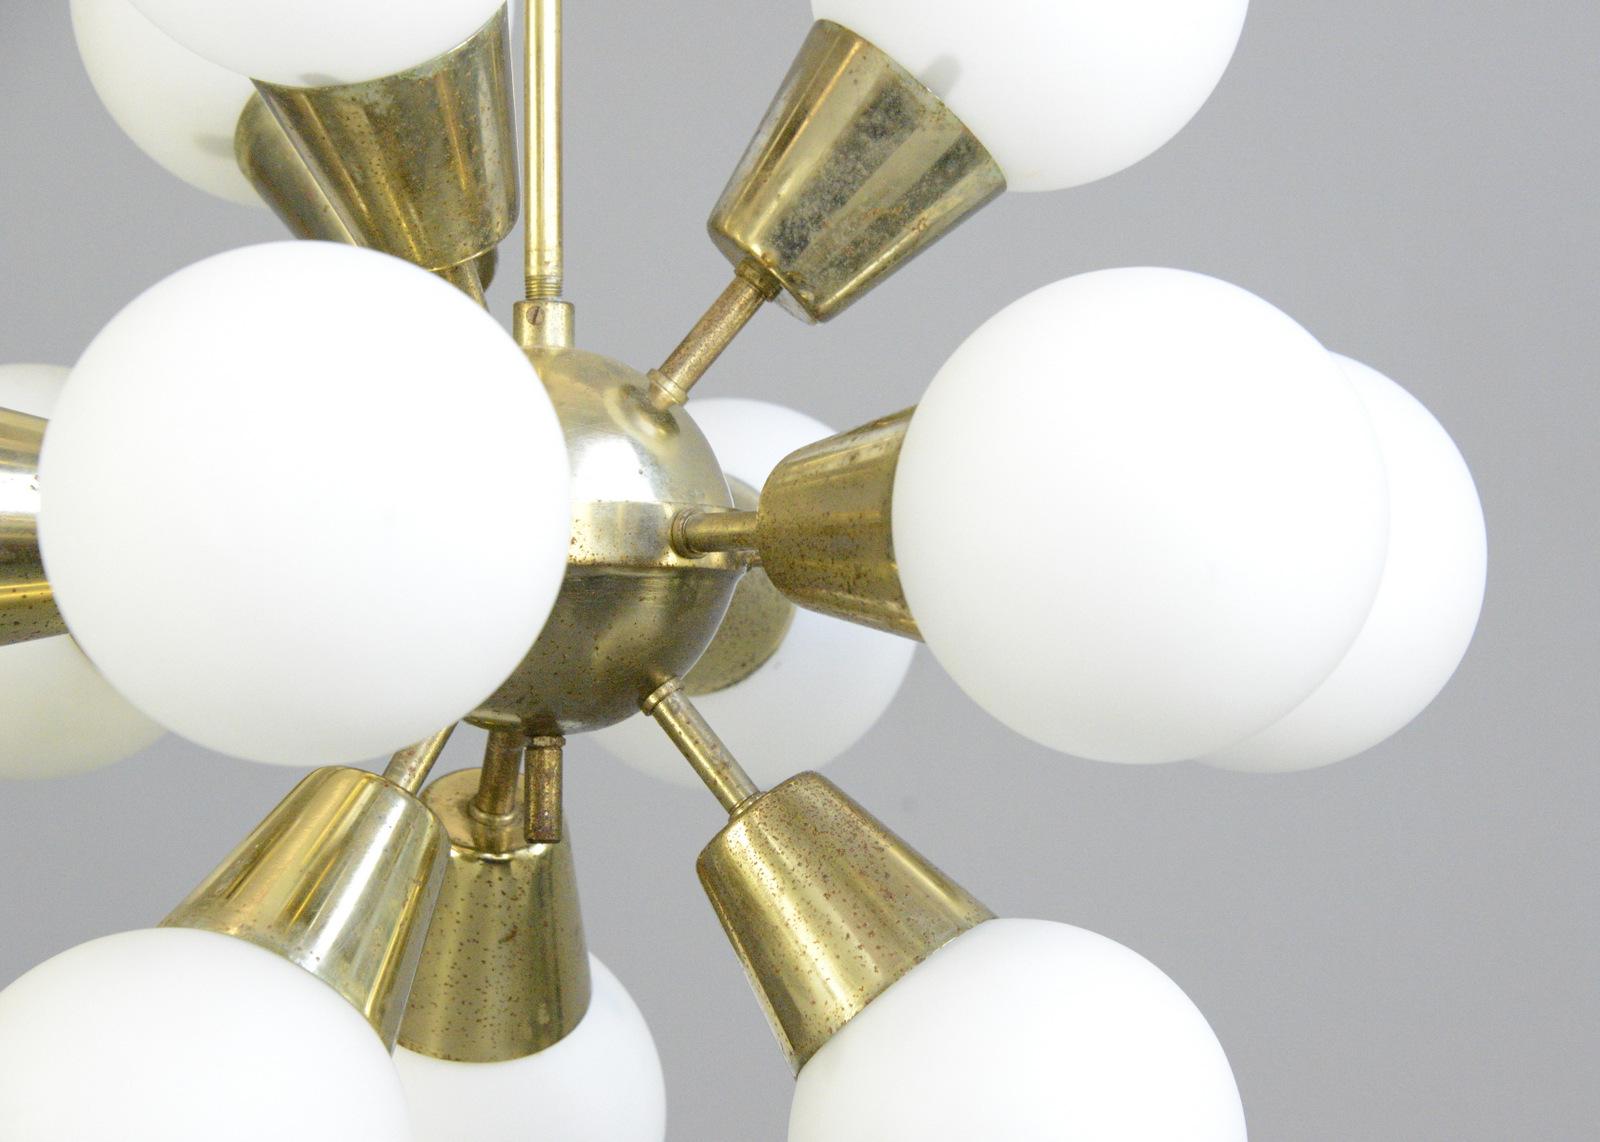 Lampe pendante Sputnik de Kamenicky Senov
-Le prix est par lampe, 2 disponibles
- Corps en laiton
- 12 boules de verre
- Accepte les ampoules à vis E14
- Livré avec des ampoules LED à faible consommation d'énergie
- Recâblage avec des composants